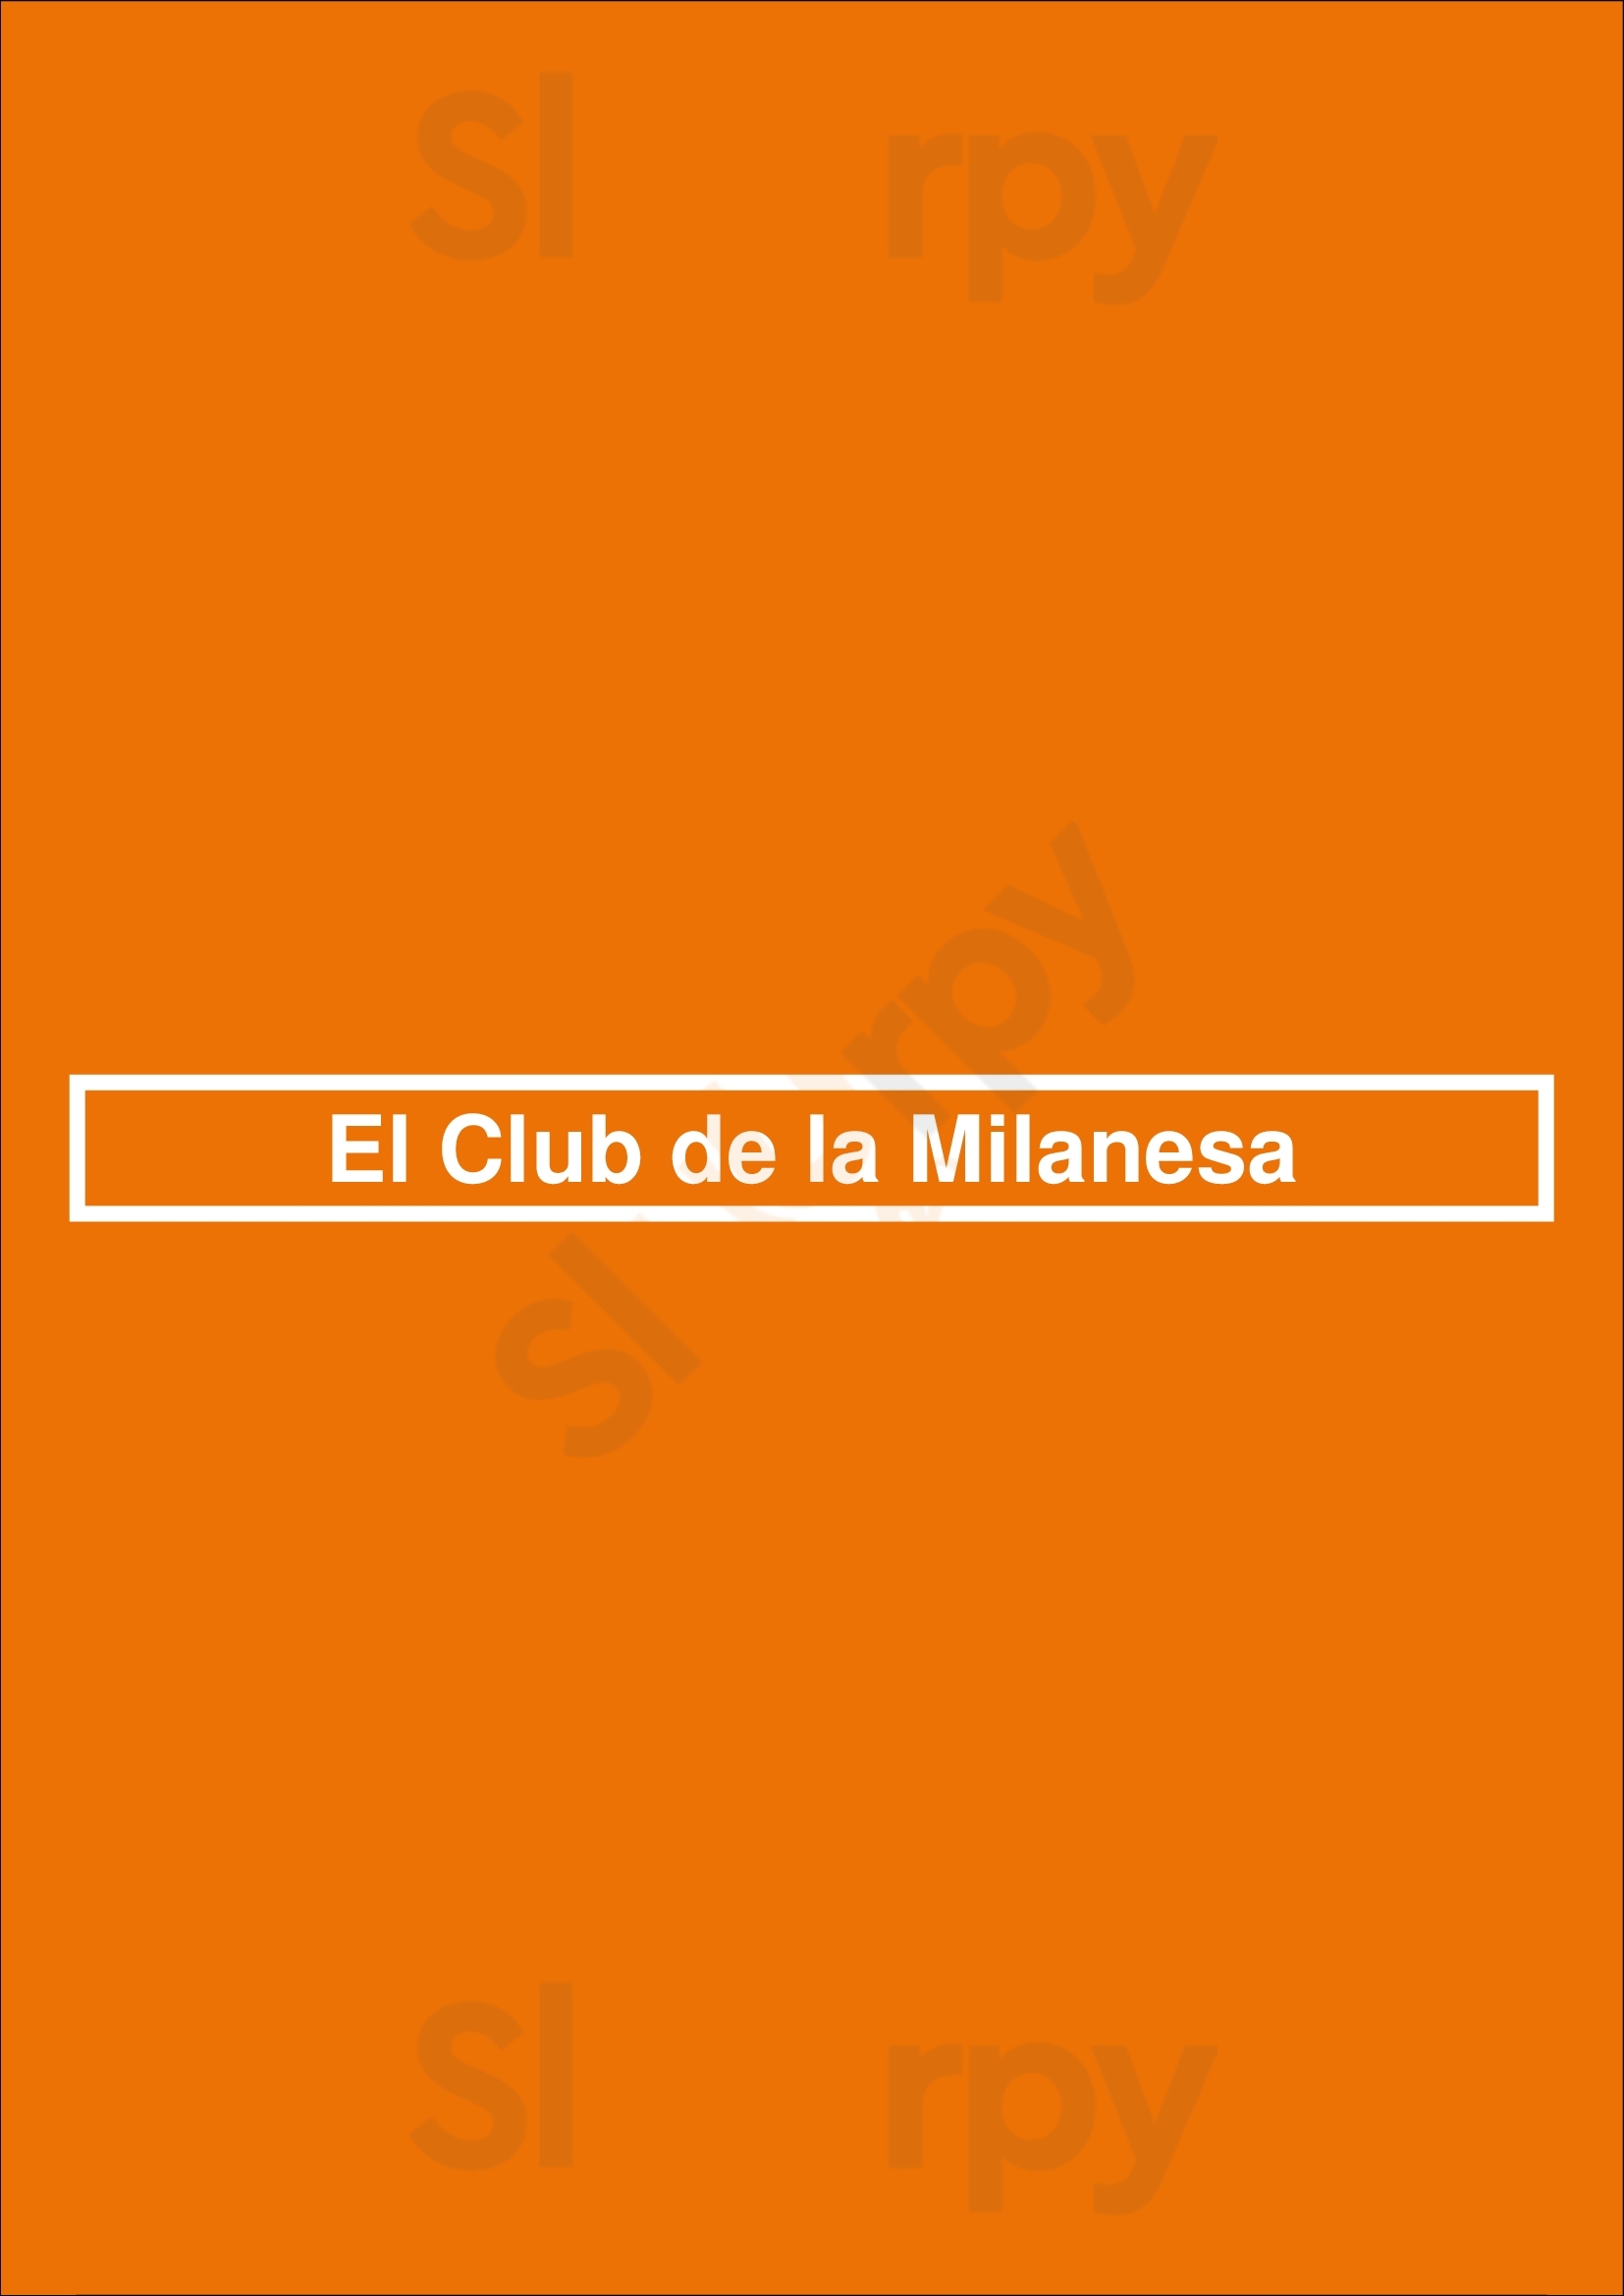 El Club De La Milanesa Buenos Aires Menu - 1